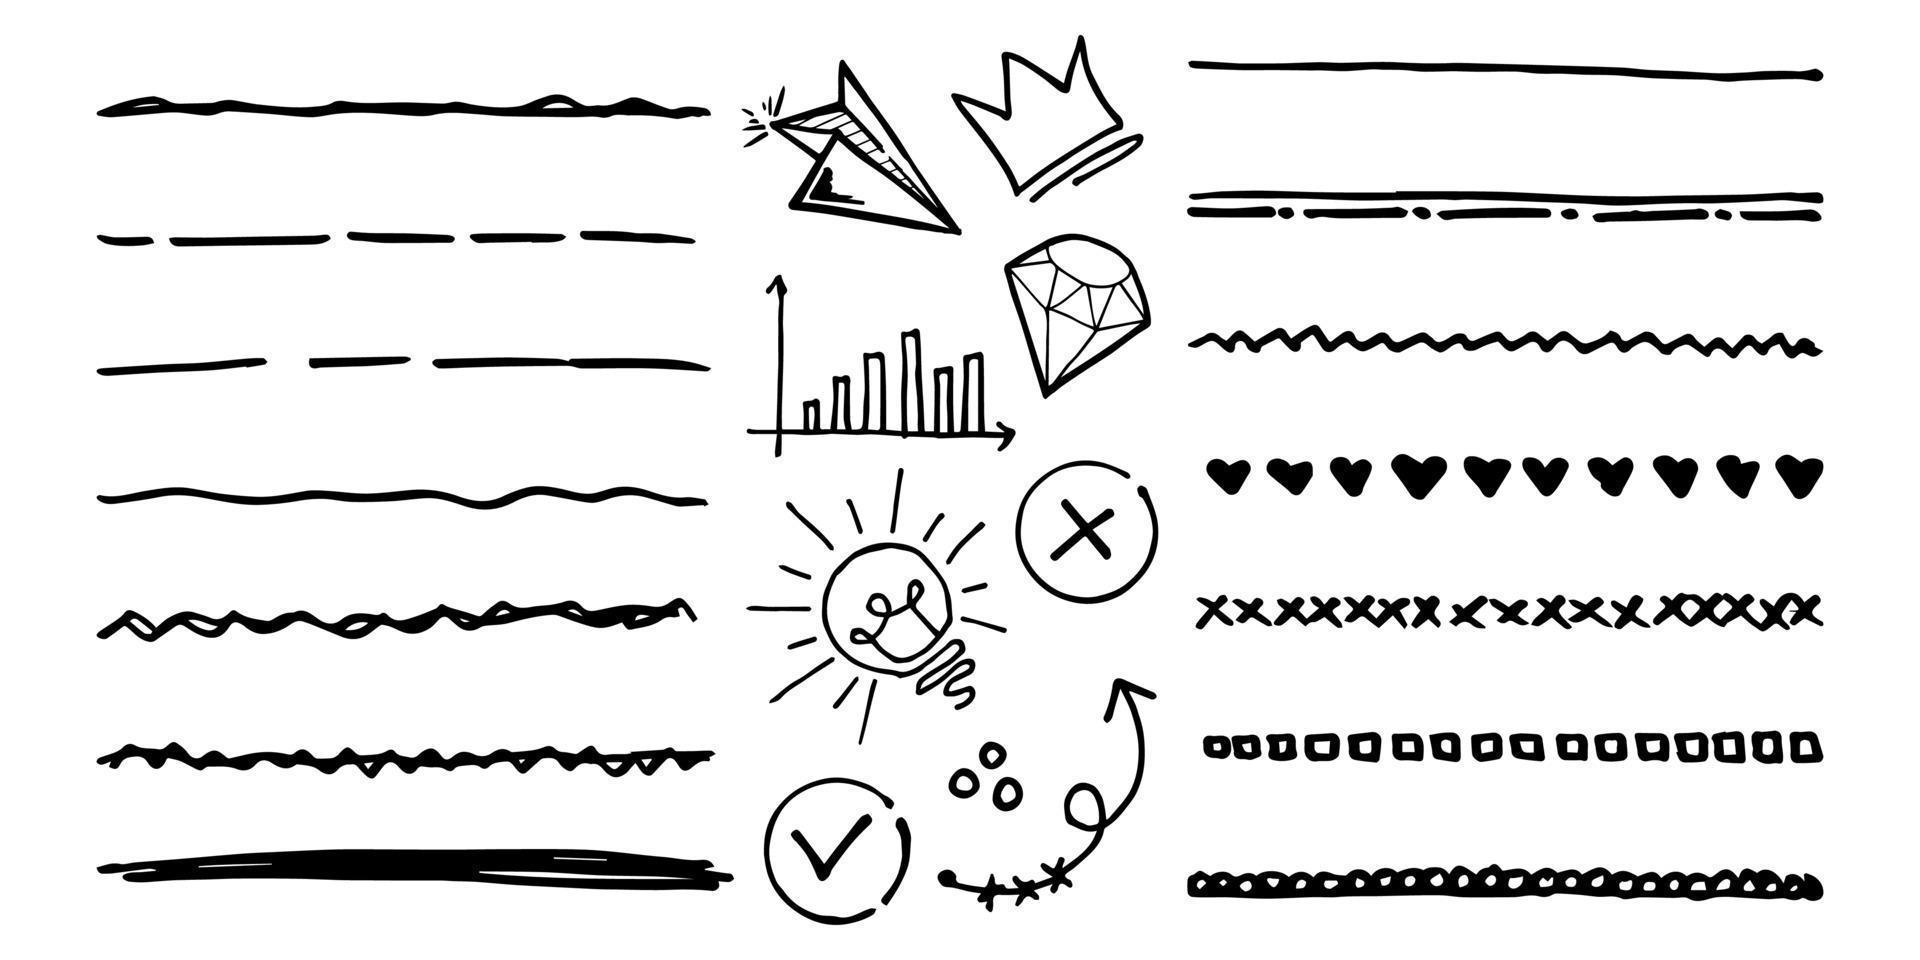 doodle vektor set illustration med hand rita linjekonst stil vektor. krona, kung, sol, pil, hjärta, kärlek, stjärna, virvla, svep, betoning, för konceptdesign